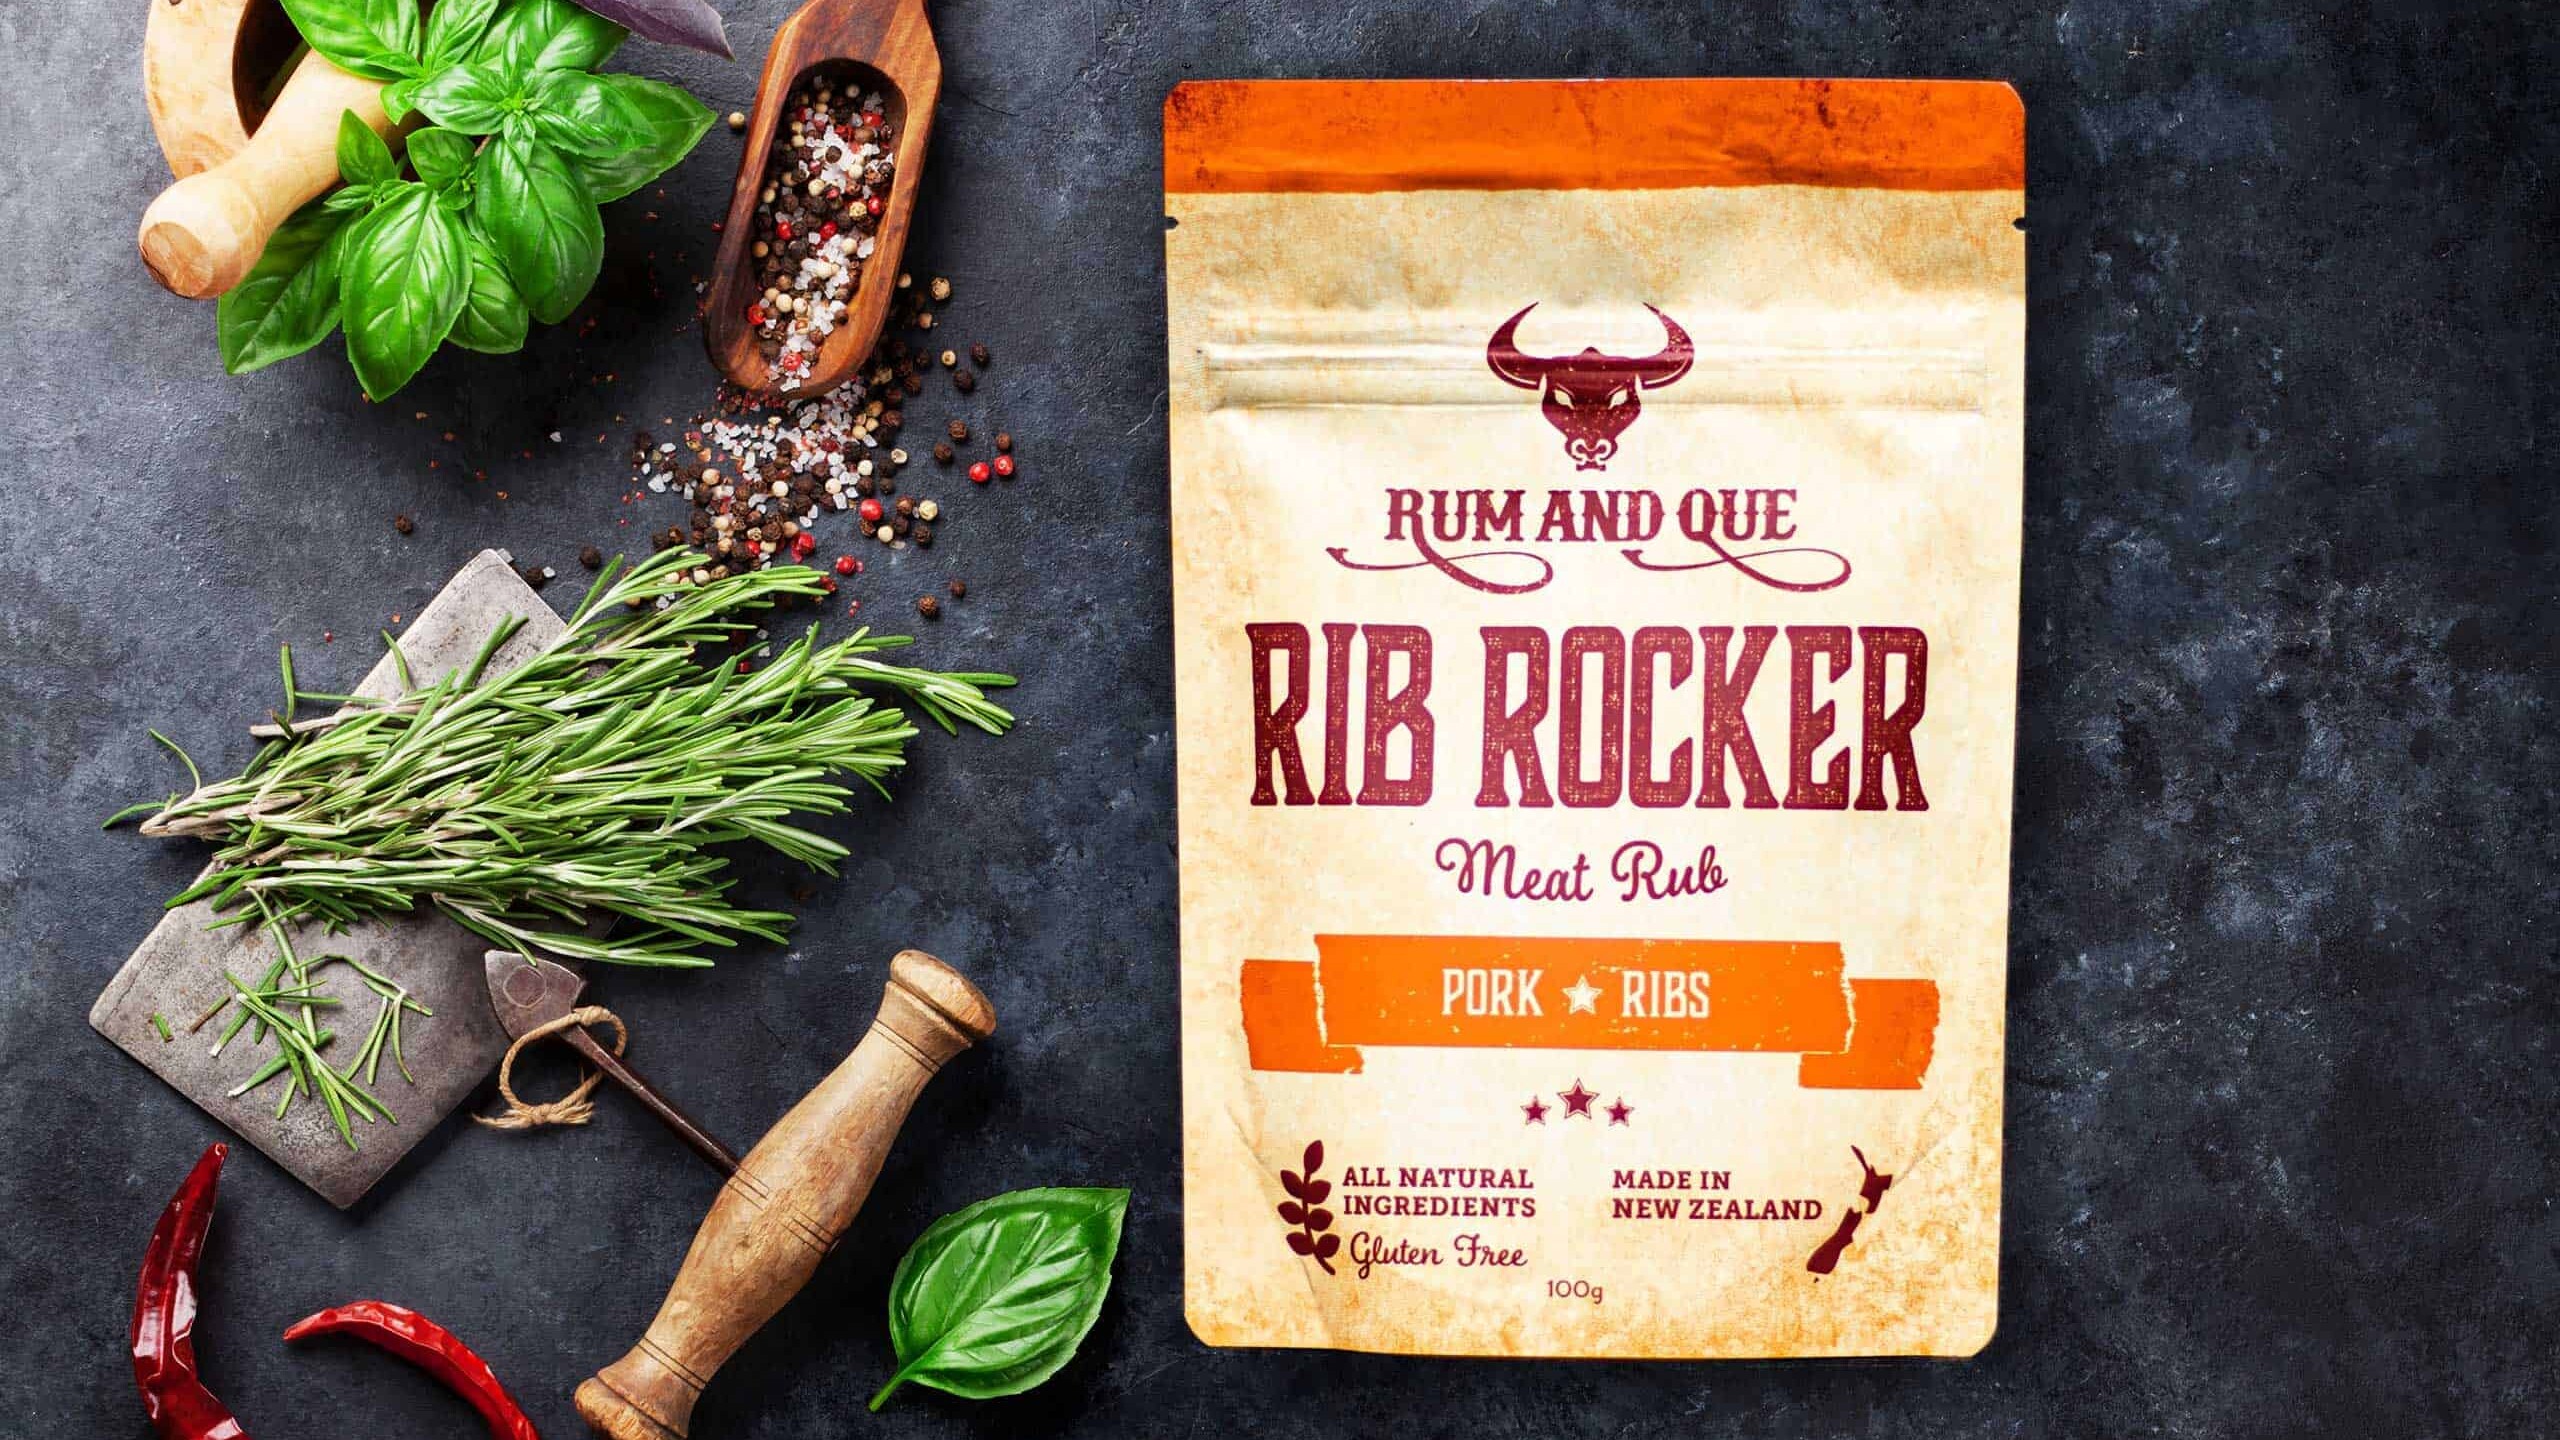 Rum & Que Rib Rocker Meat Rub